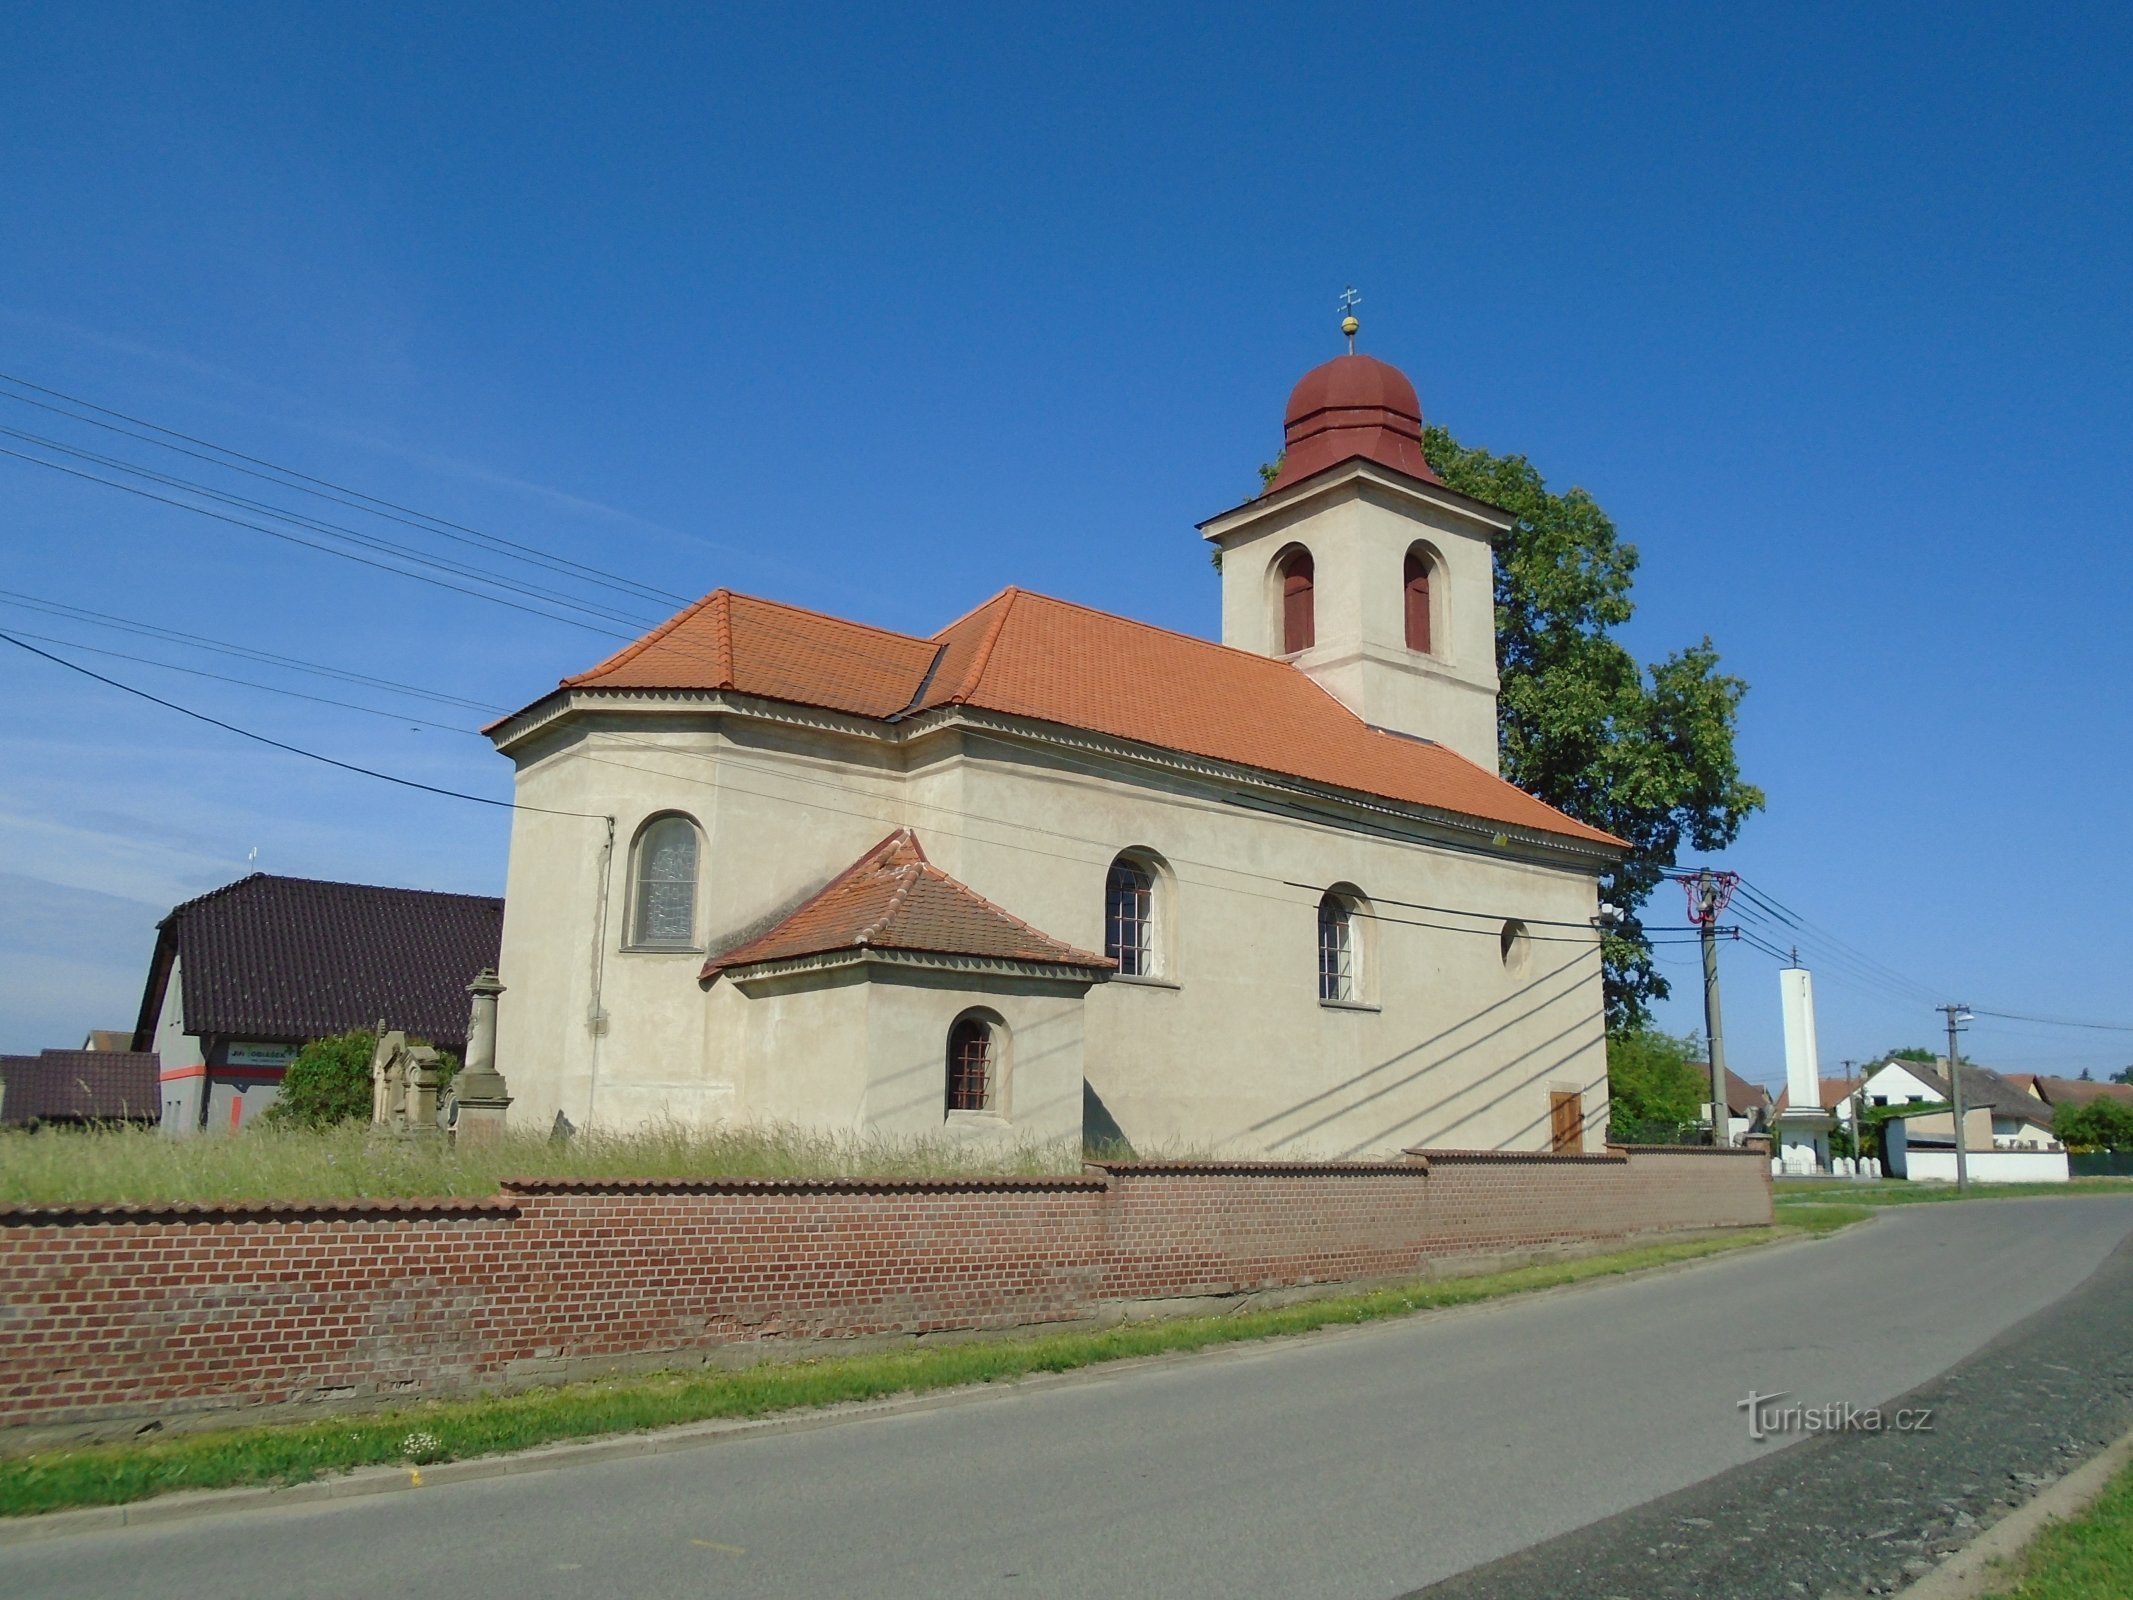 Chiesa della Santissima Trinità (Praskačka, 25.5.2018/XNUMX/XNUMX)